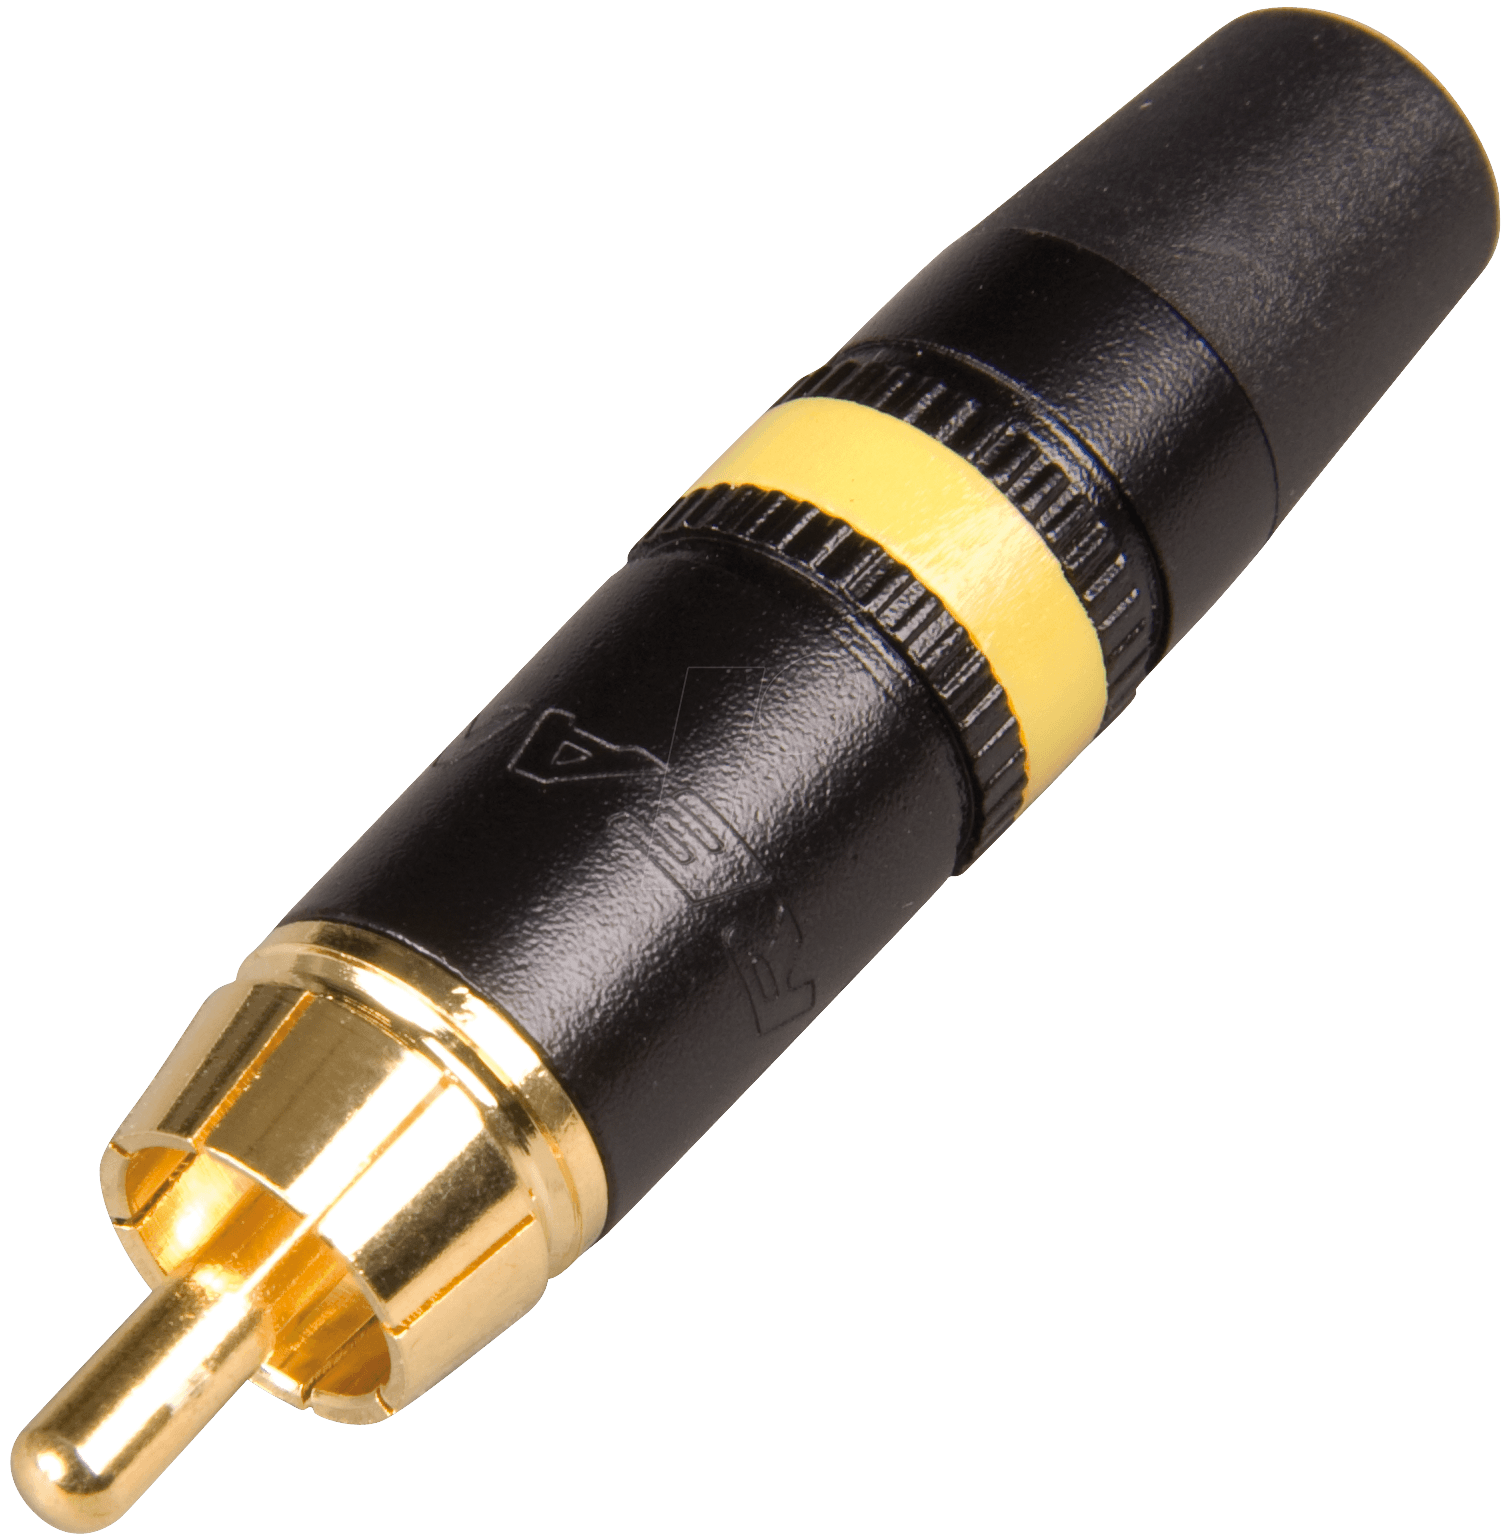 Neutrik NYS373-4 кабельный разъем RCA корпус черный хром, золоченые контакты, желтая полоса